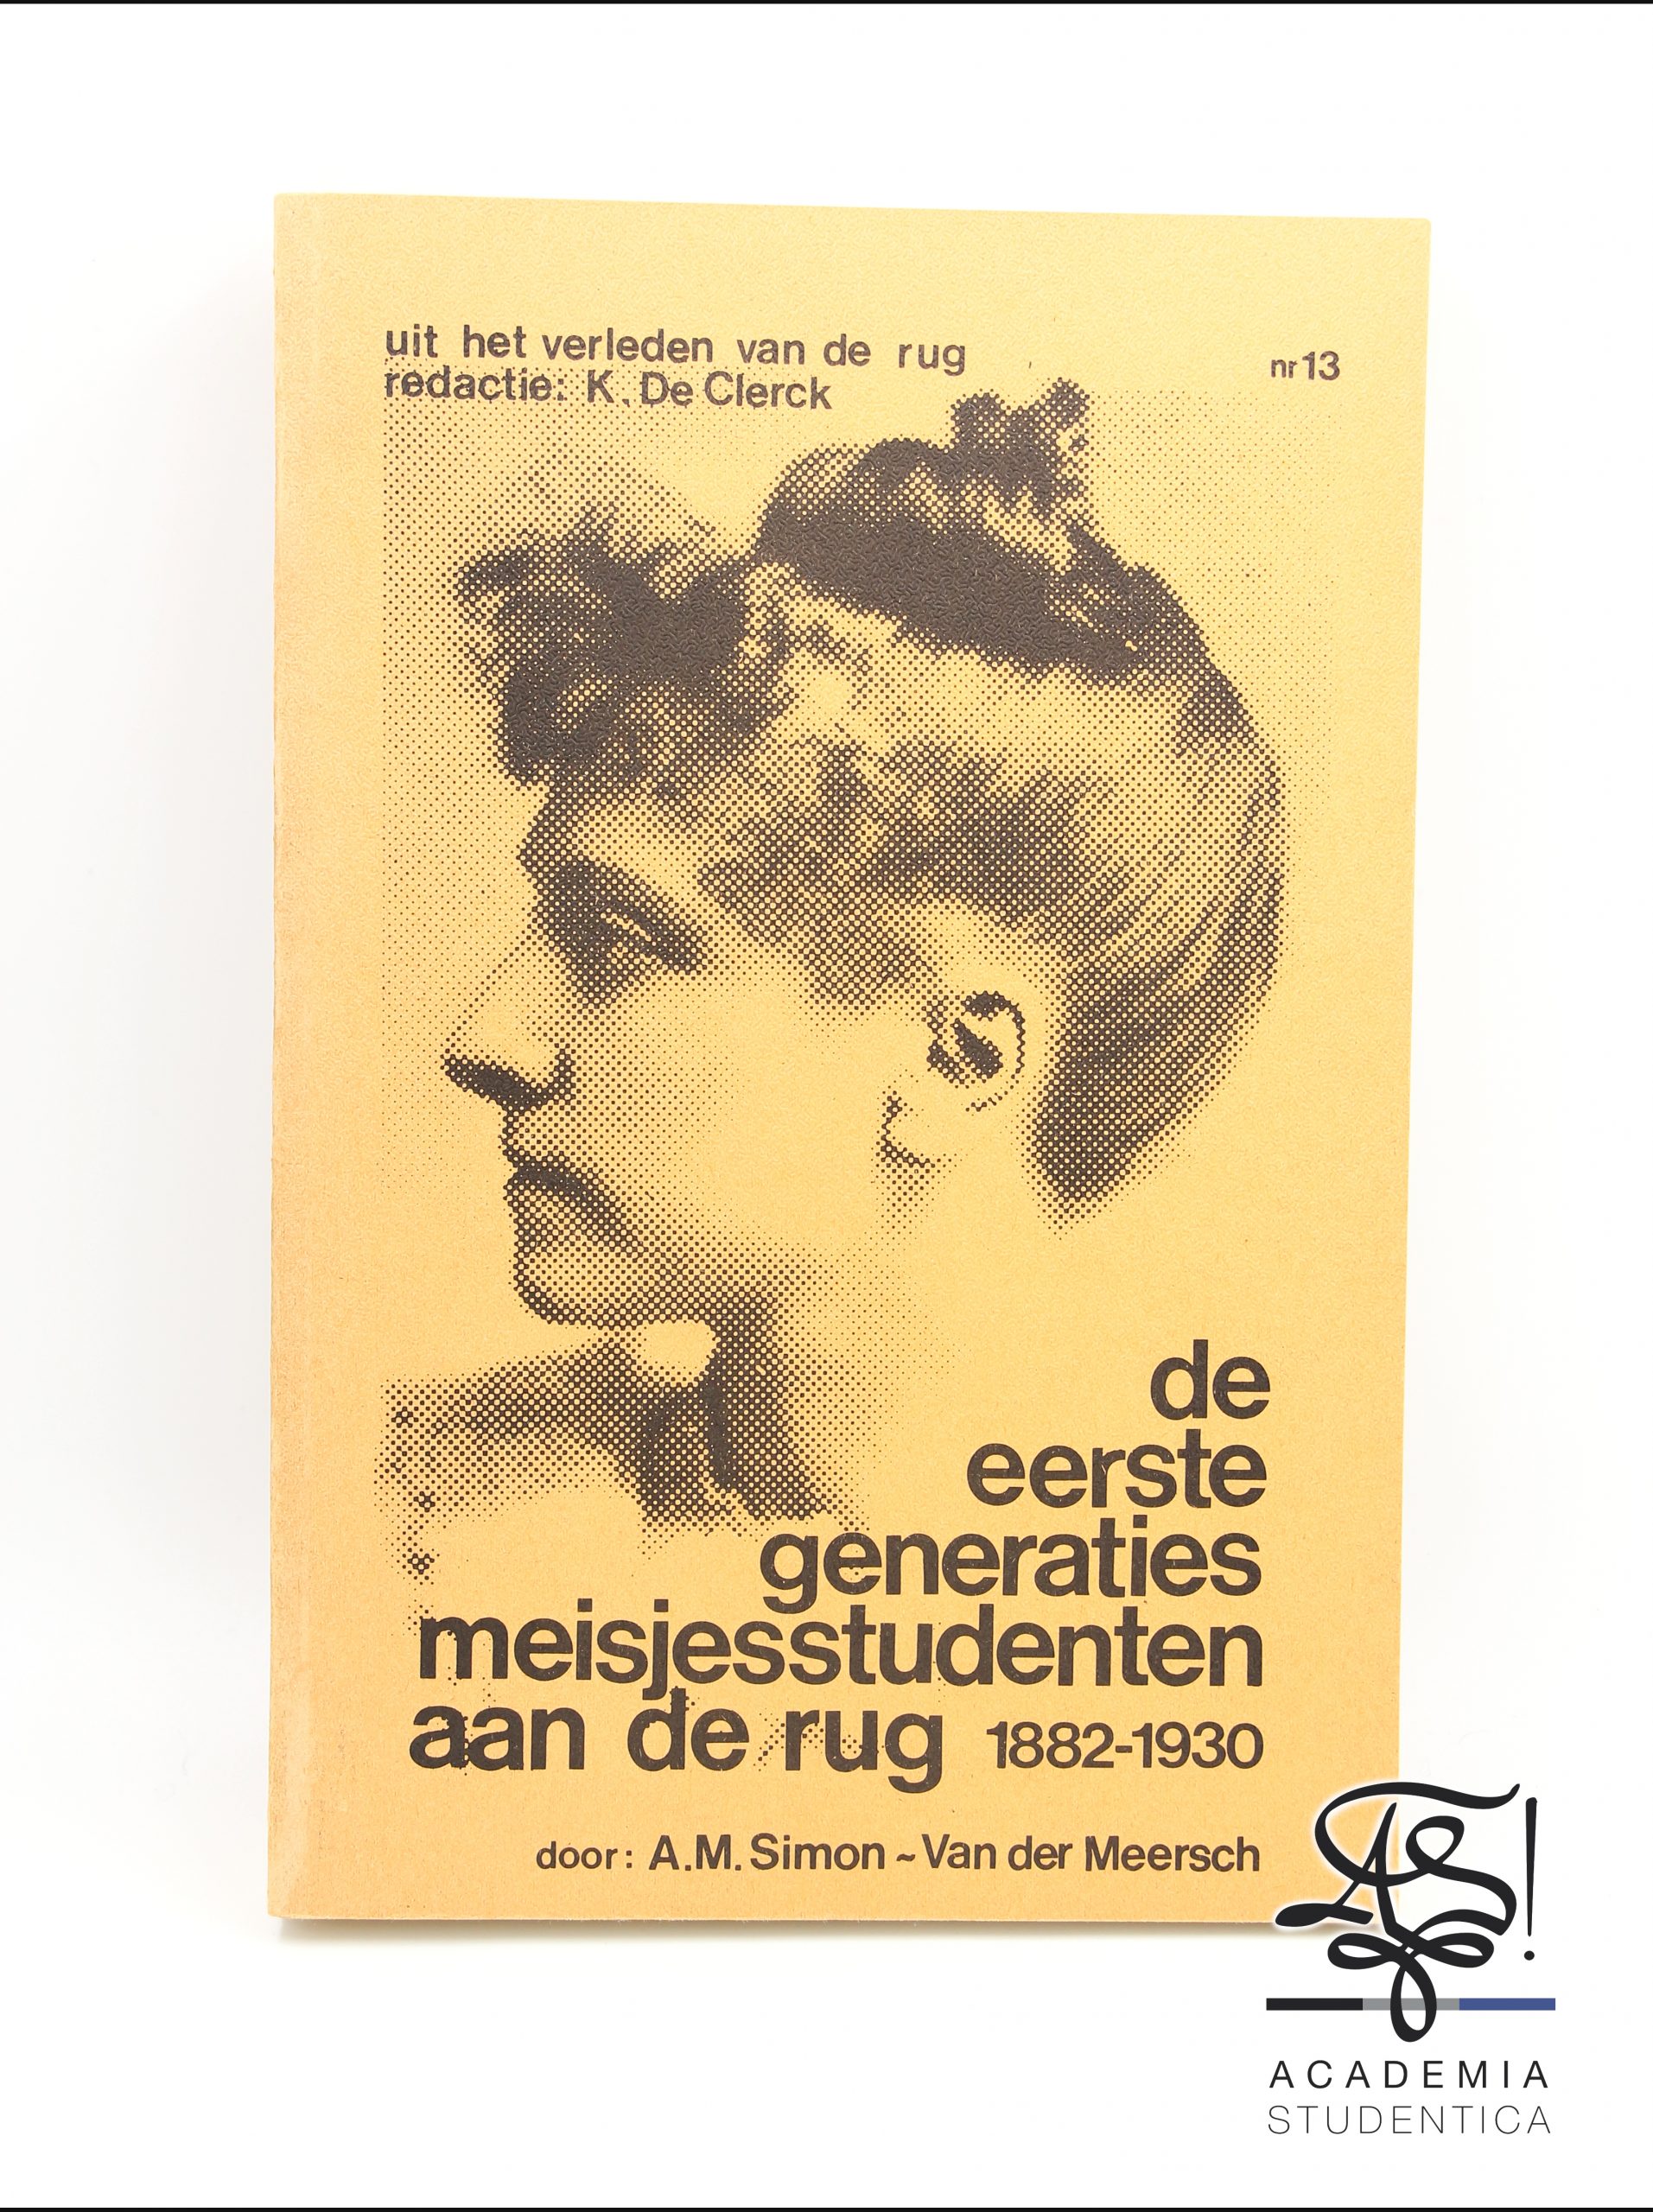 Read more about the article Simon-Vandermeersch, Anne-Marie, De eerste generaties meisjesstudenten aan de Rijksuniversiteit te Gent (18821883 tot 19291930), RUG Archief, Belgium, Gent, 1982.